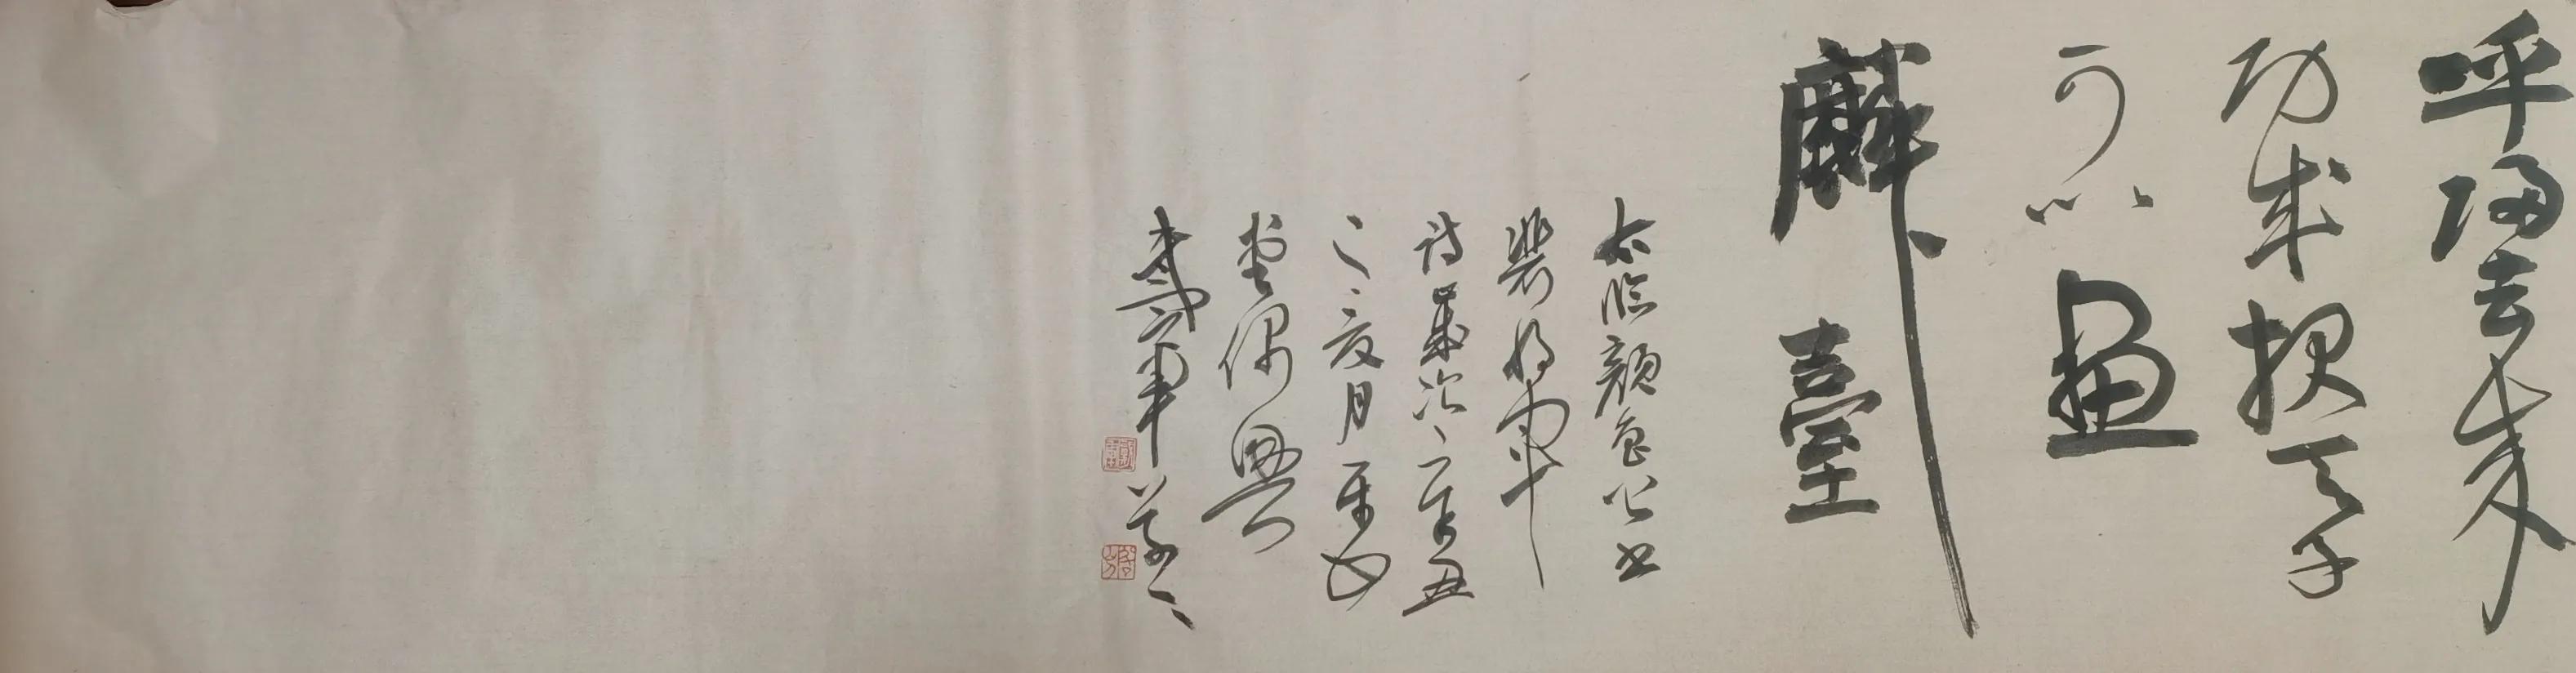 著名书画家戴军临写《裴将军诗帖》，如一首狂飚曲表达对豪放生命的礼赞